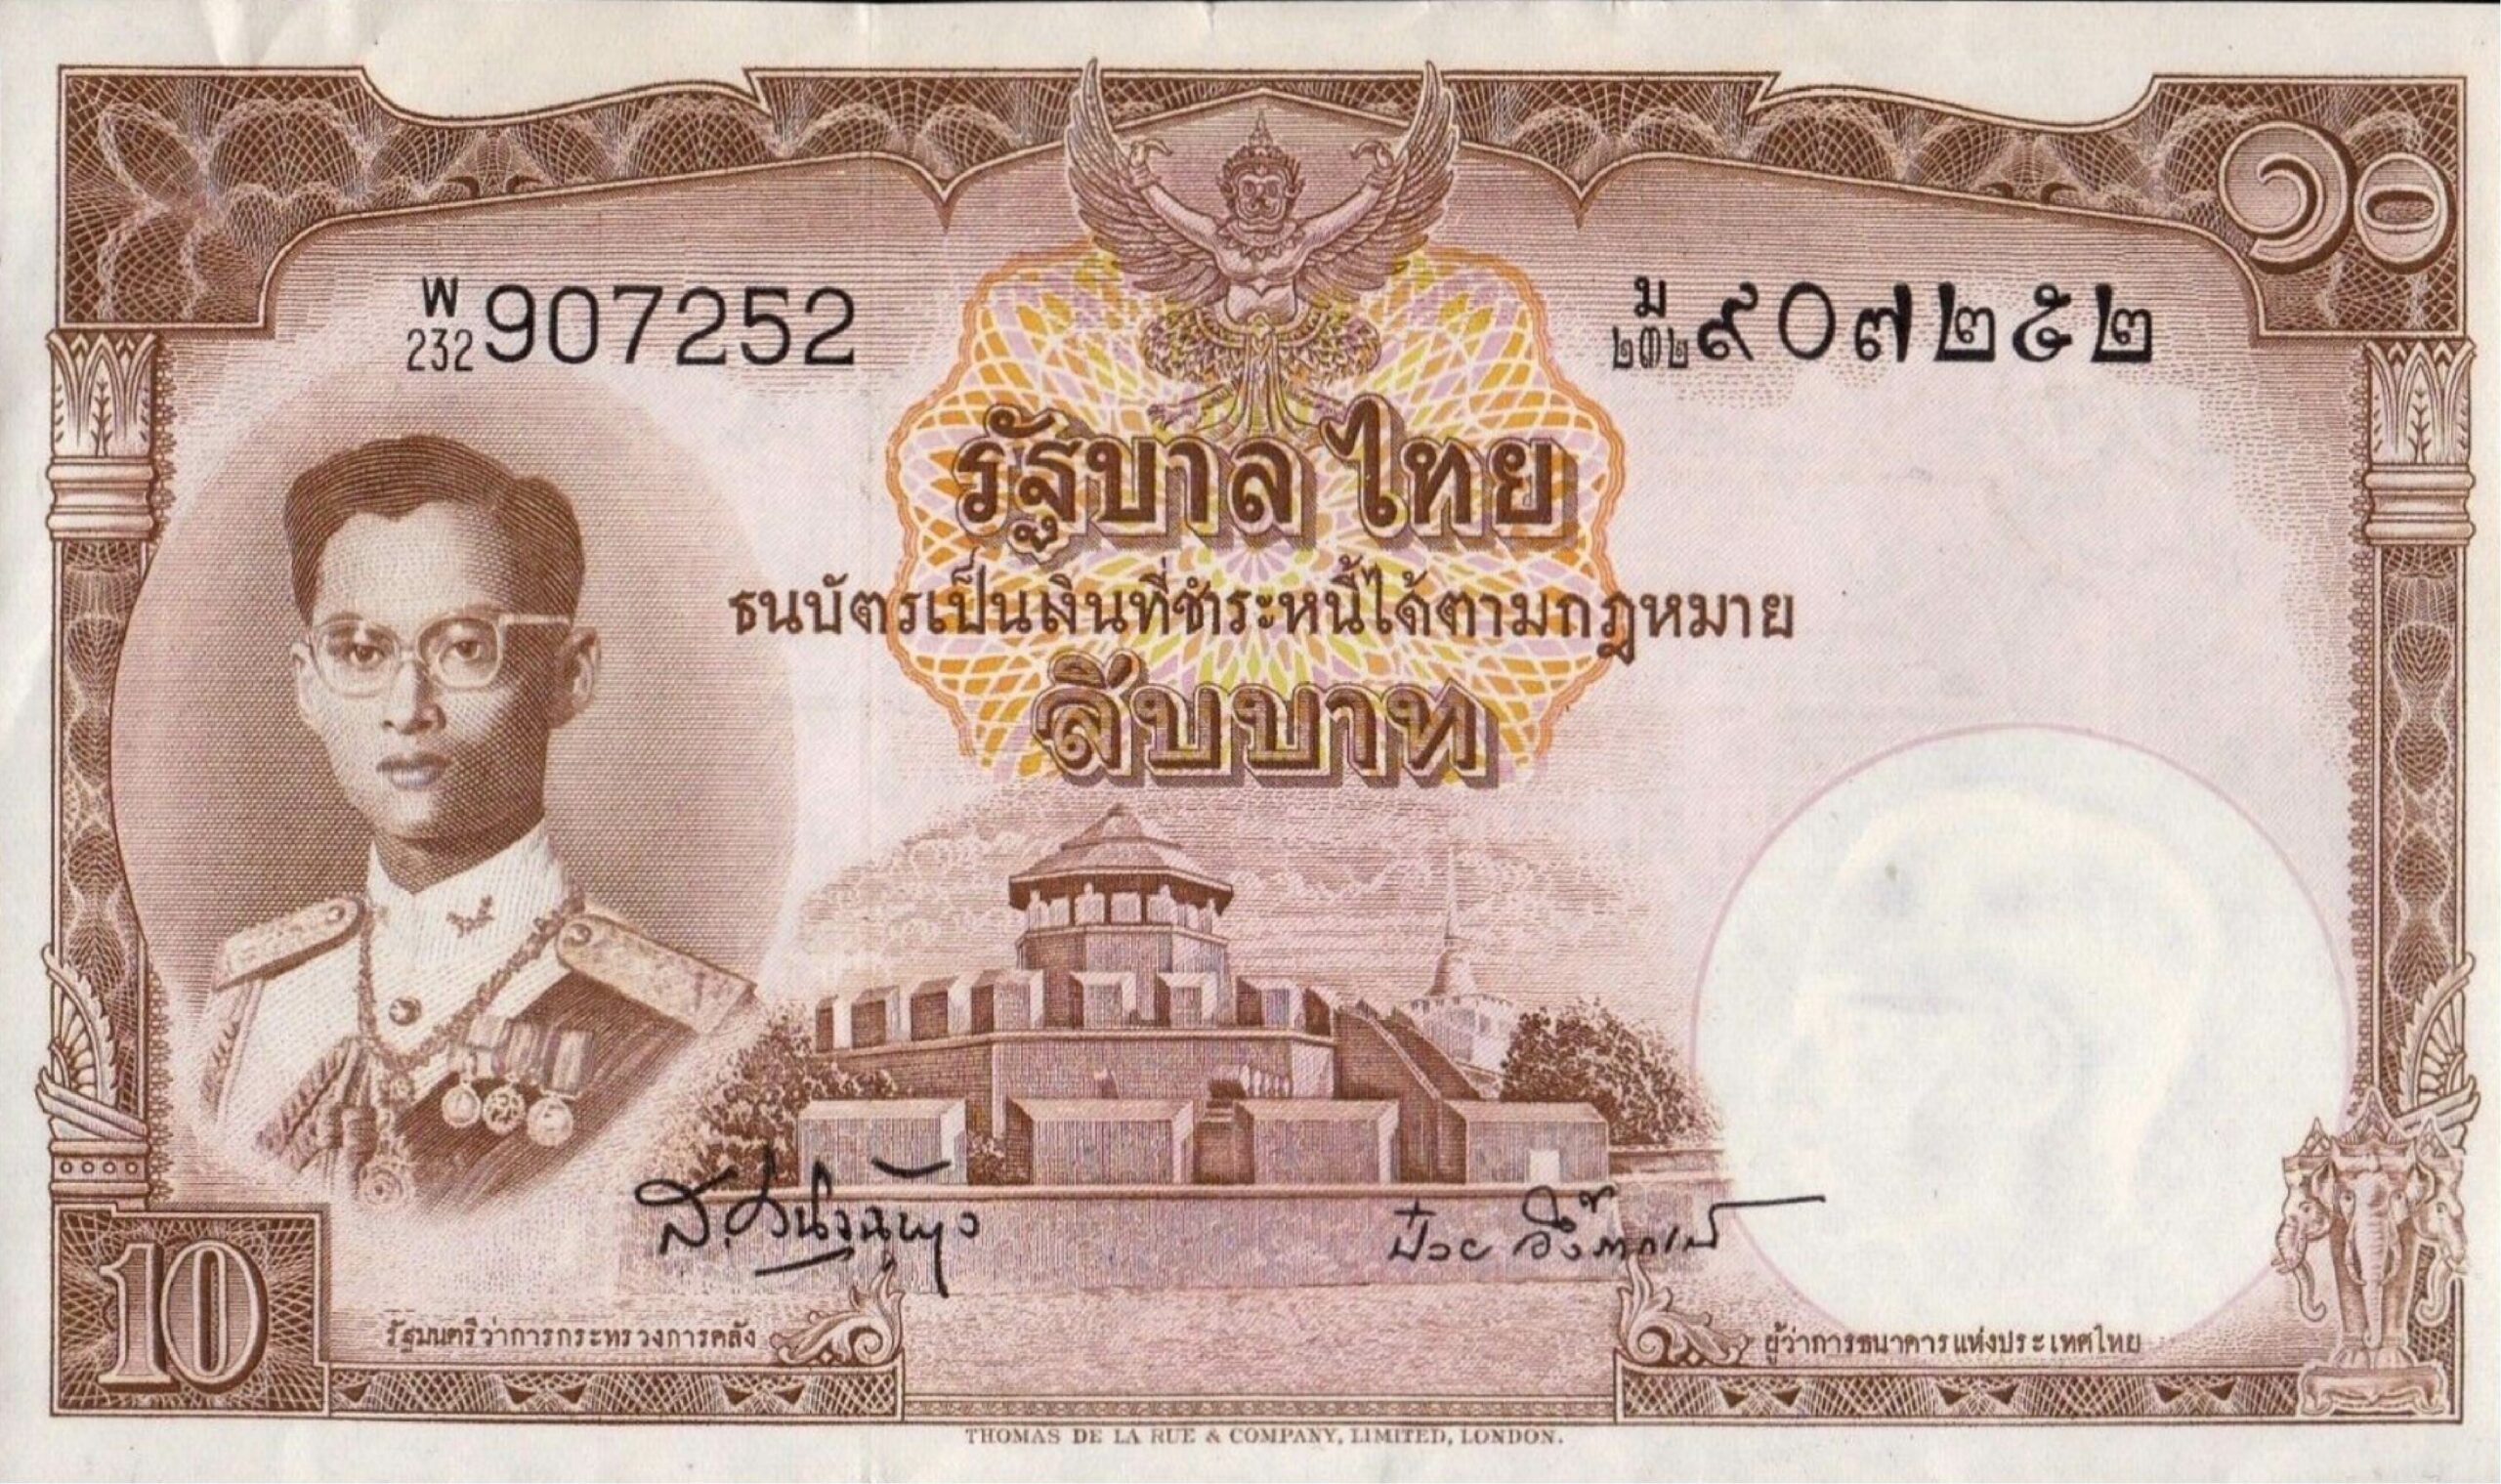 10 Thai Baht banknote (9th Series)